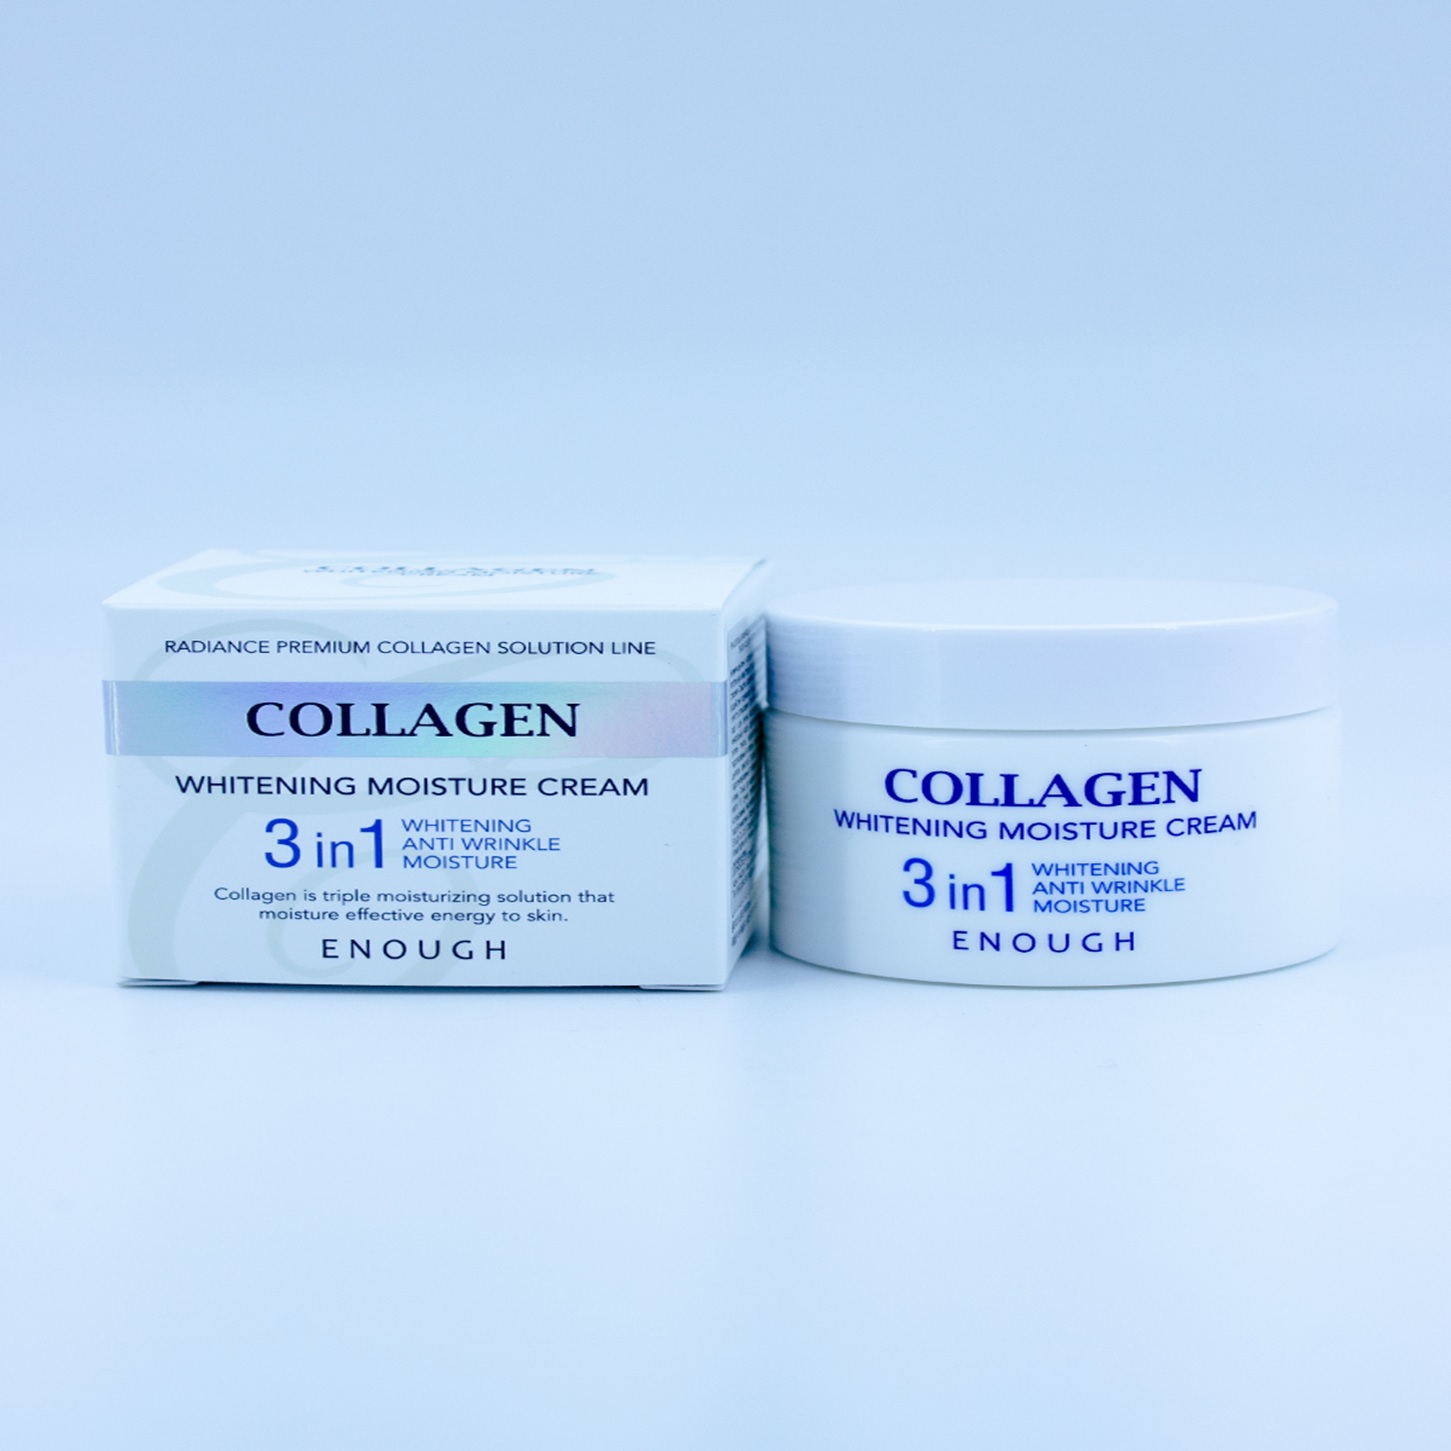 ENOUGH – КРЕМ ДЛЯ ЛИЦА УВЛАЖНЯЮЩИЙ С КОЛЛАГЕНОМ И ОТБЕЛИВАЮЩИМ ЭФФЕКТОМ Collagen Whitening moisture cream [50g]